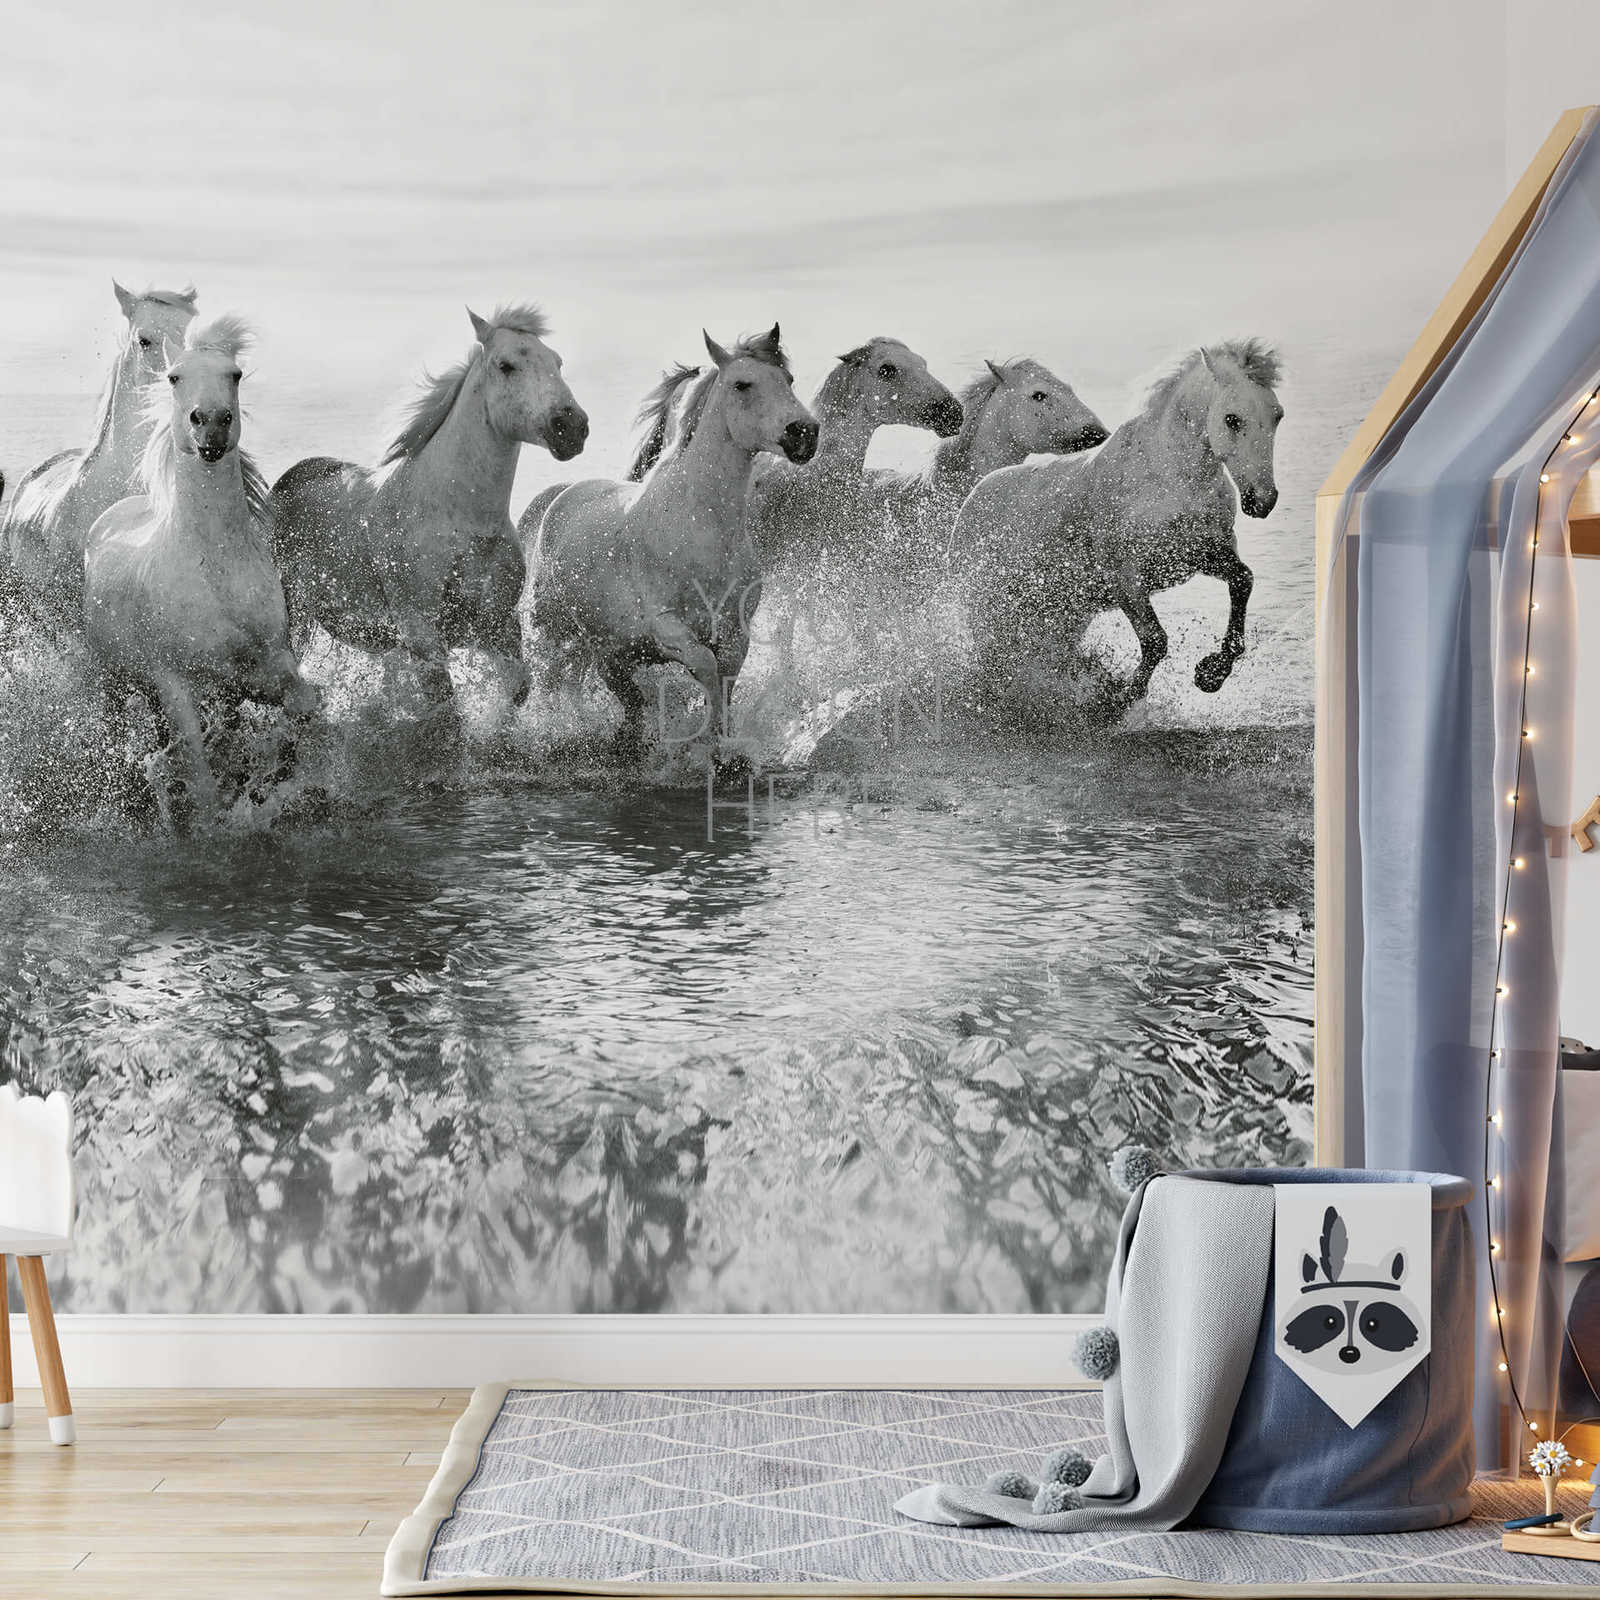             Fototapete weiße Pferde im Wasser – Weiß, Grau, Schwarz
        